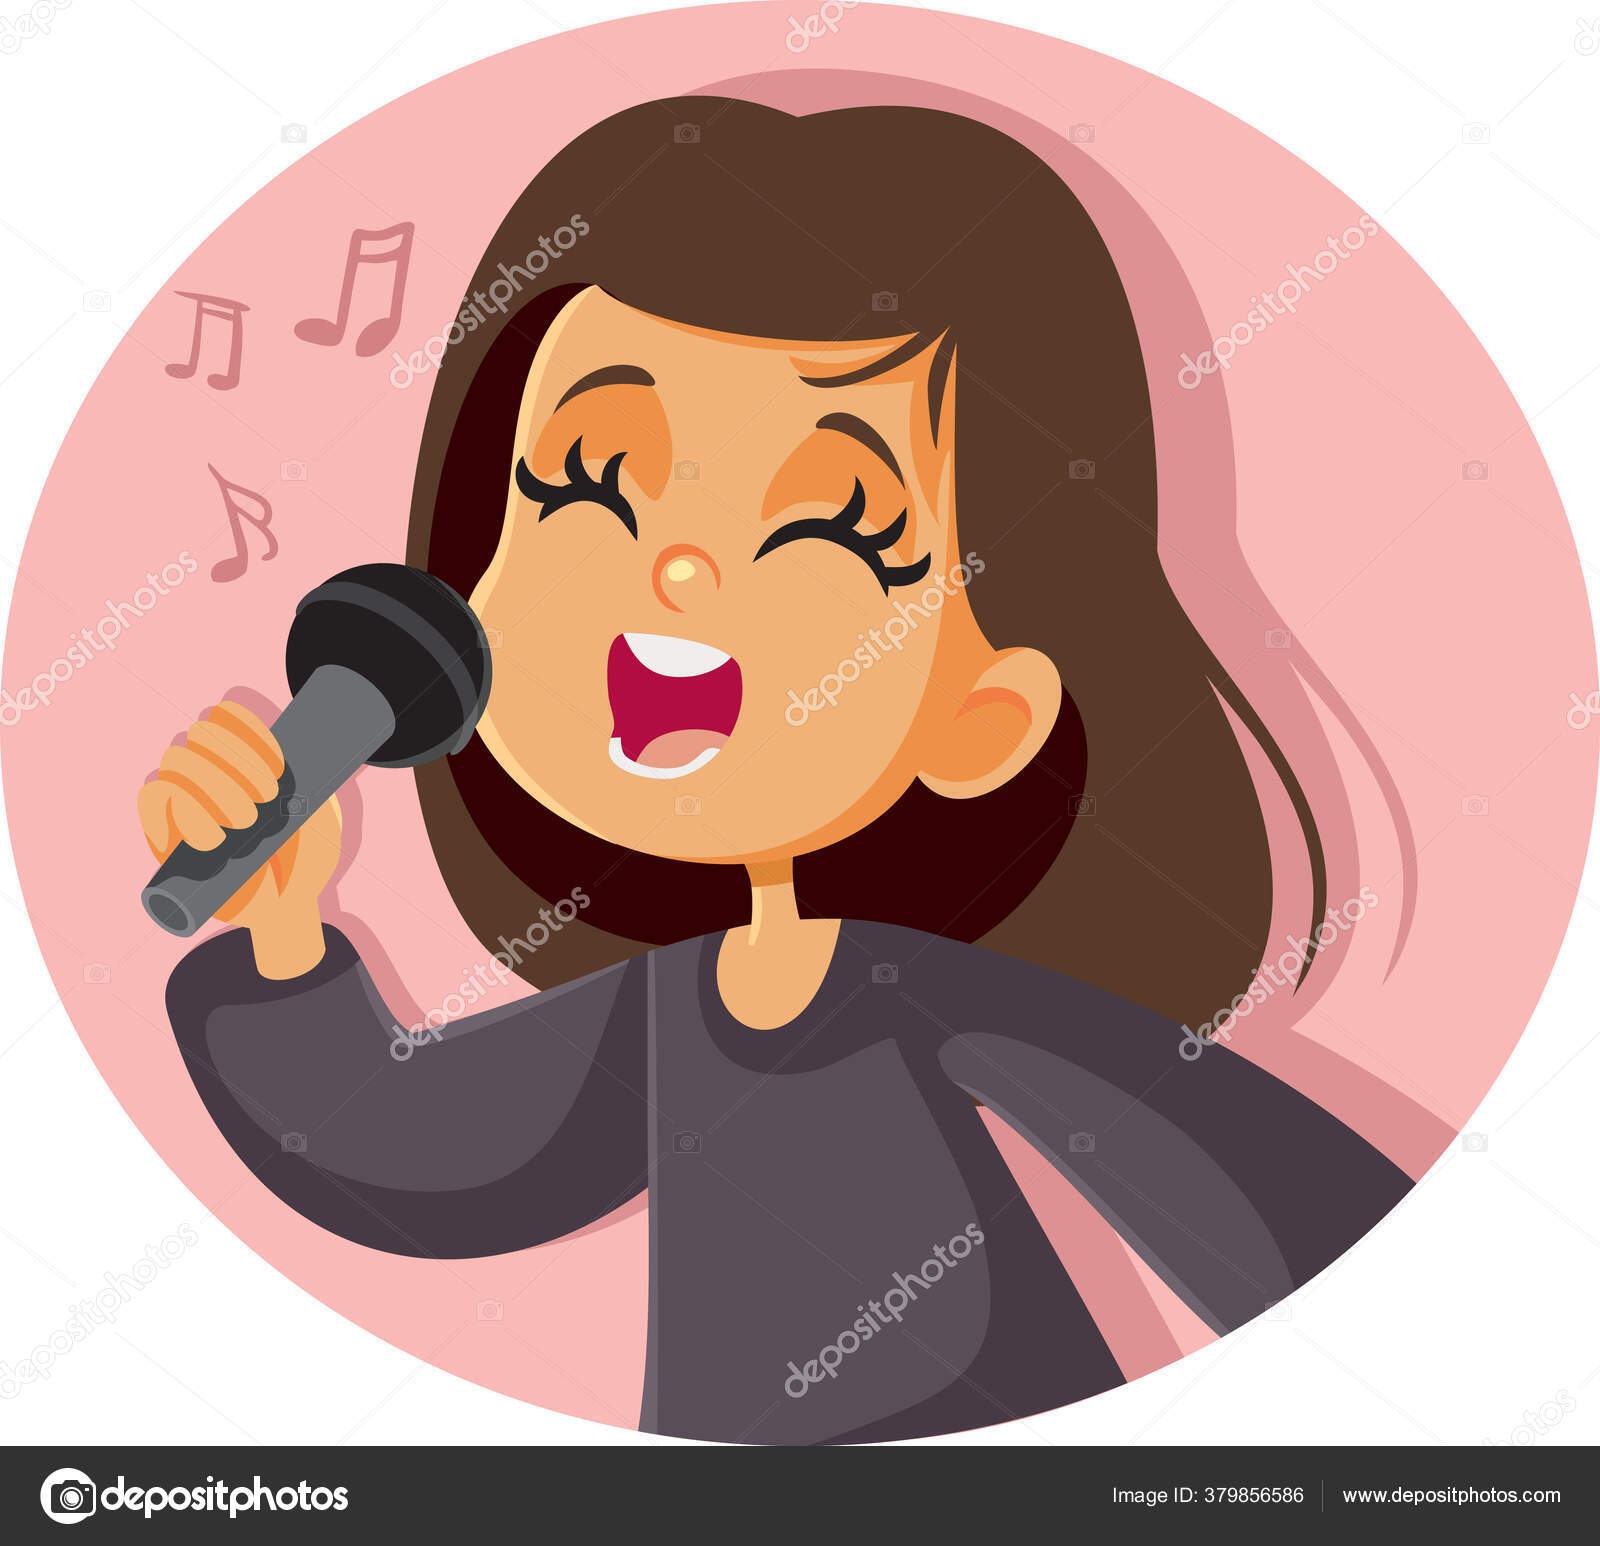 niña con microfono cantando ilustración de Stock